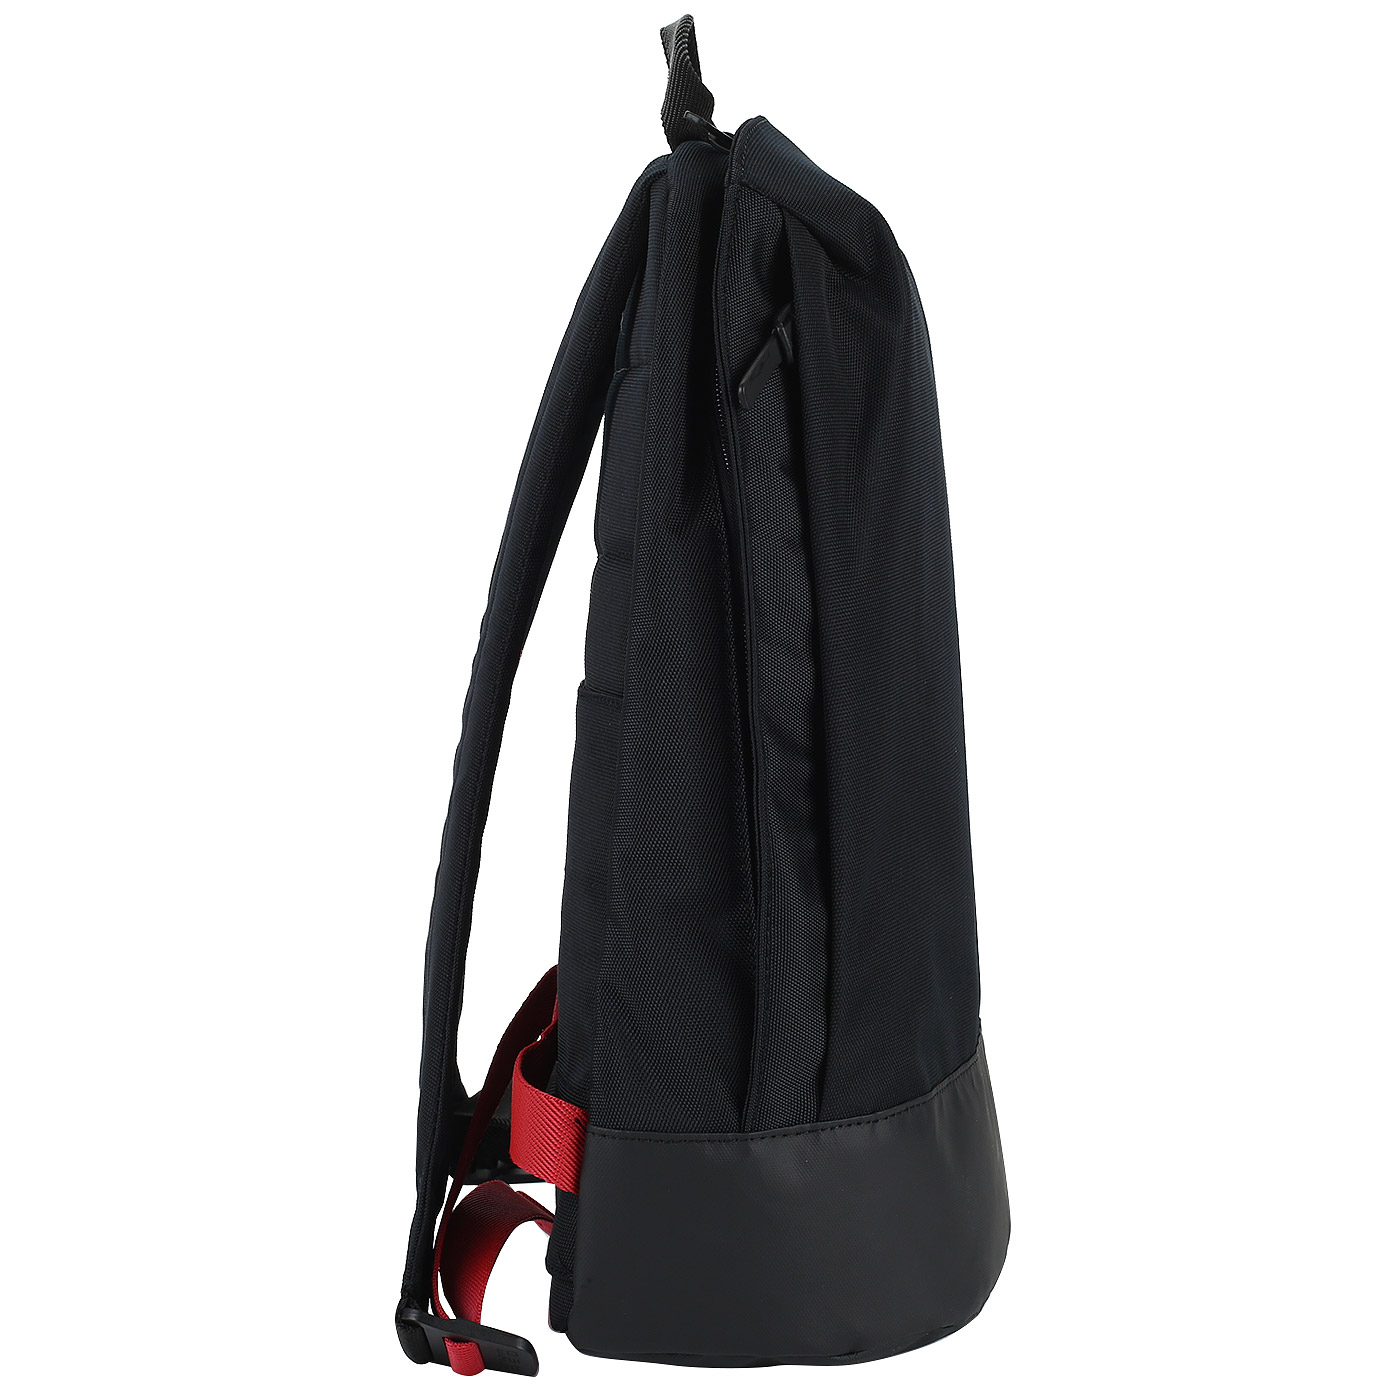 Рюкзак с отделением для ноутбука Samsonite Red Scep